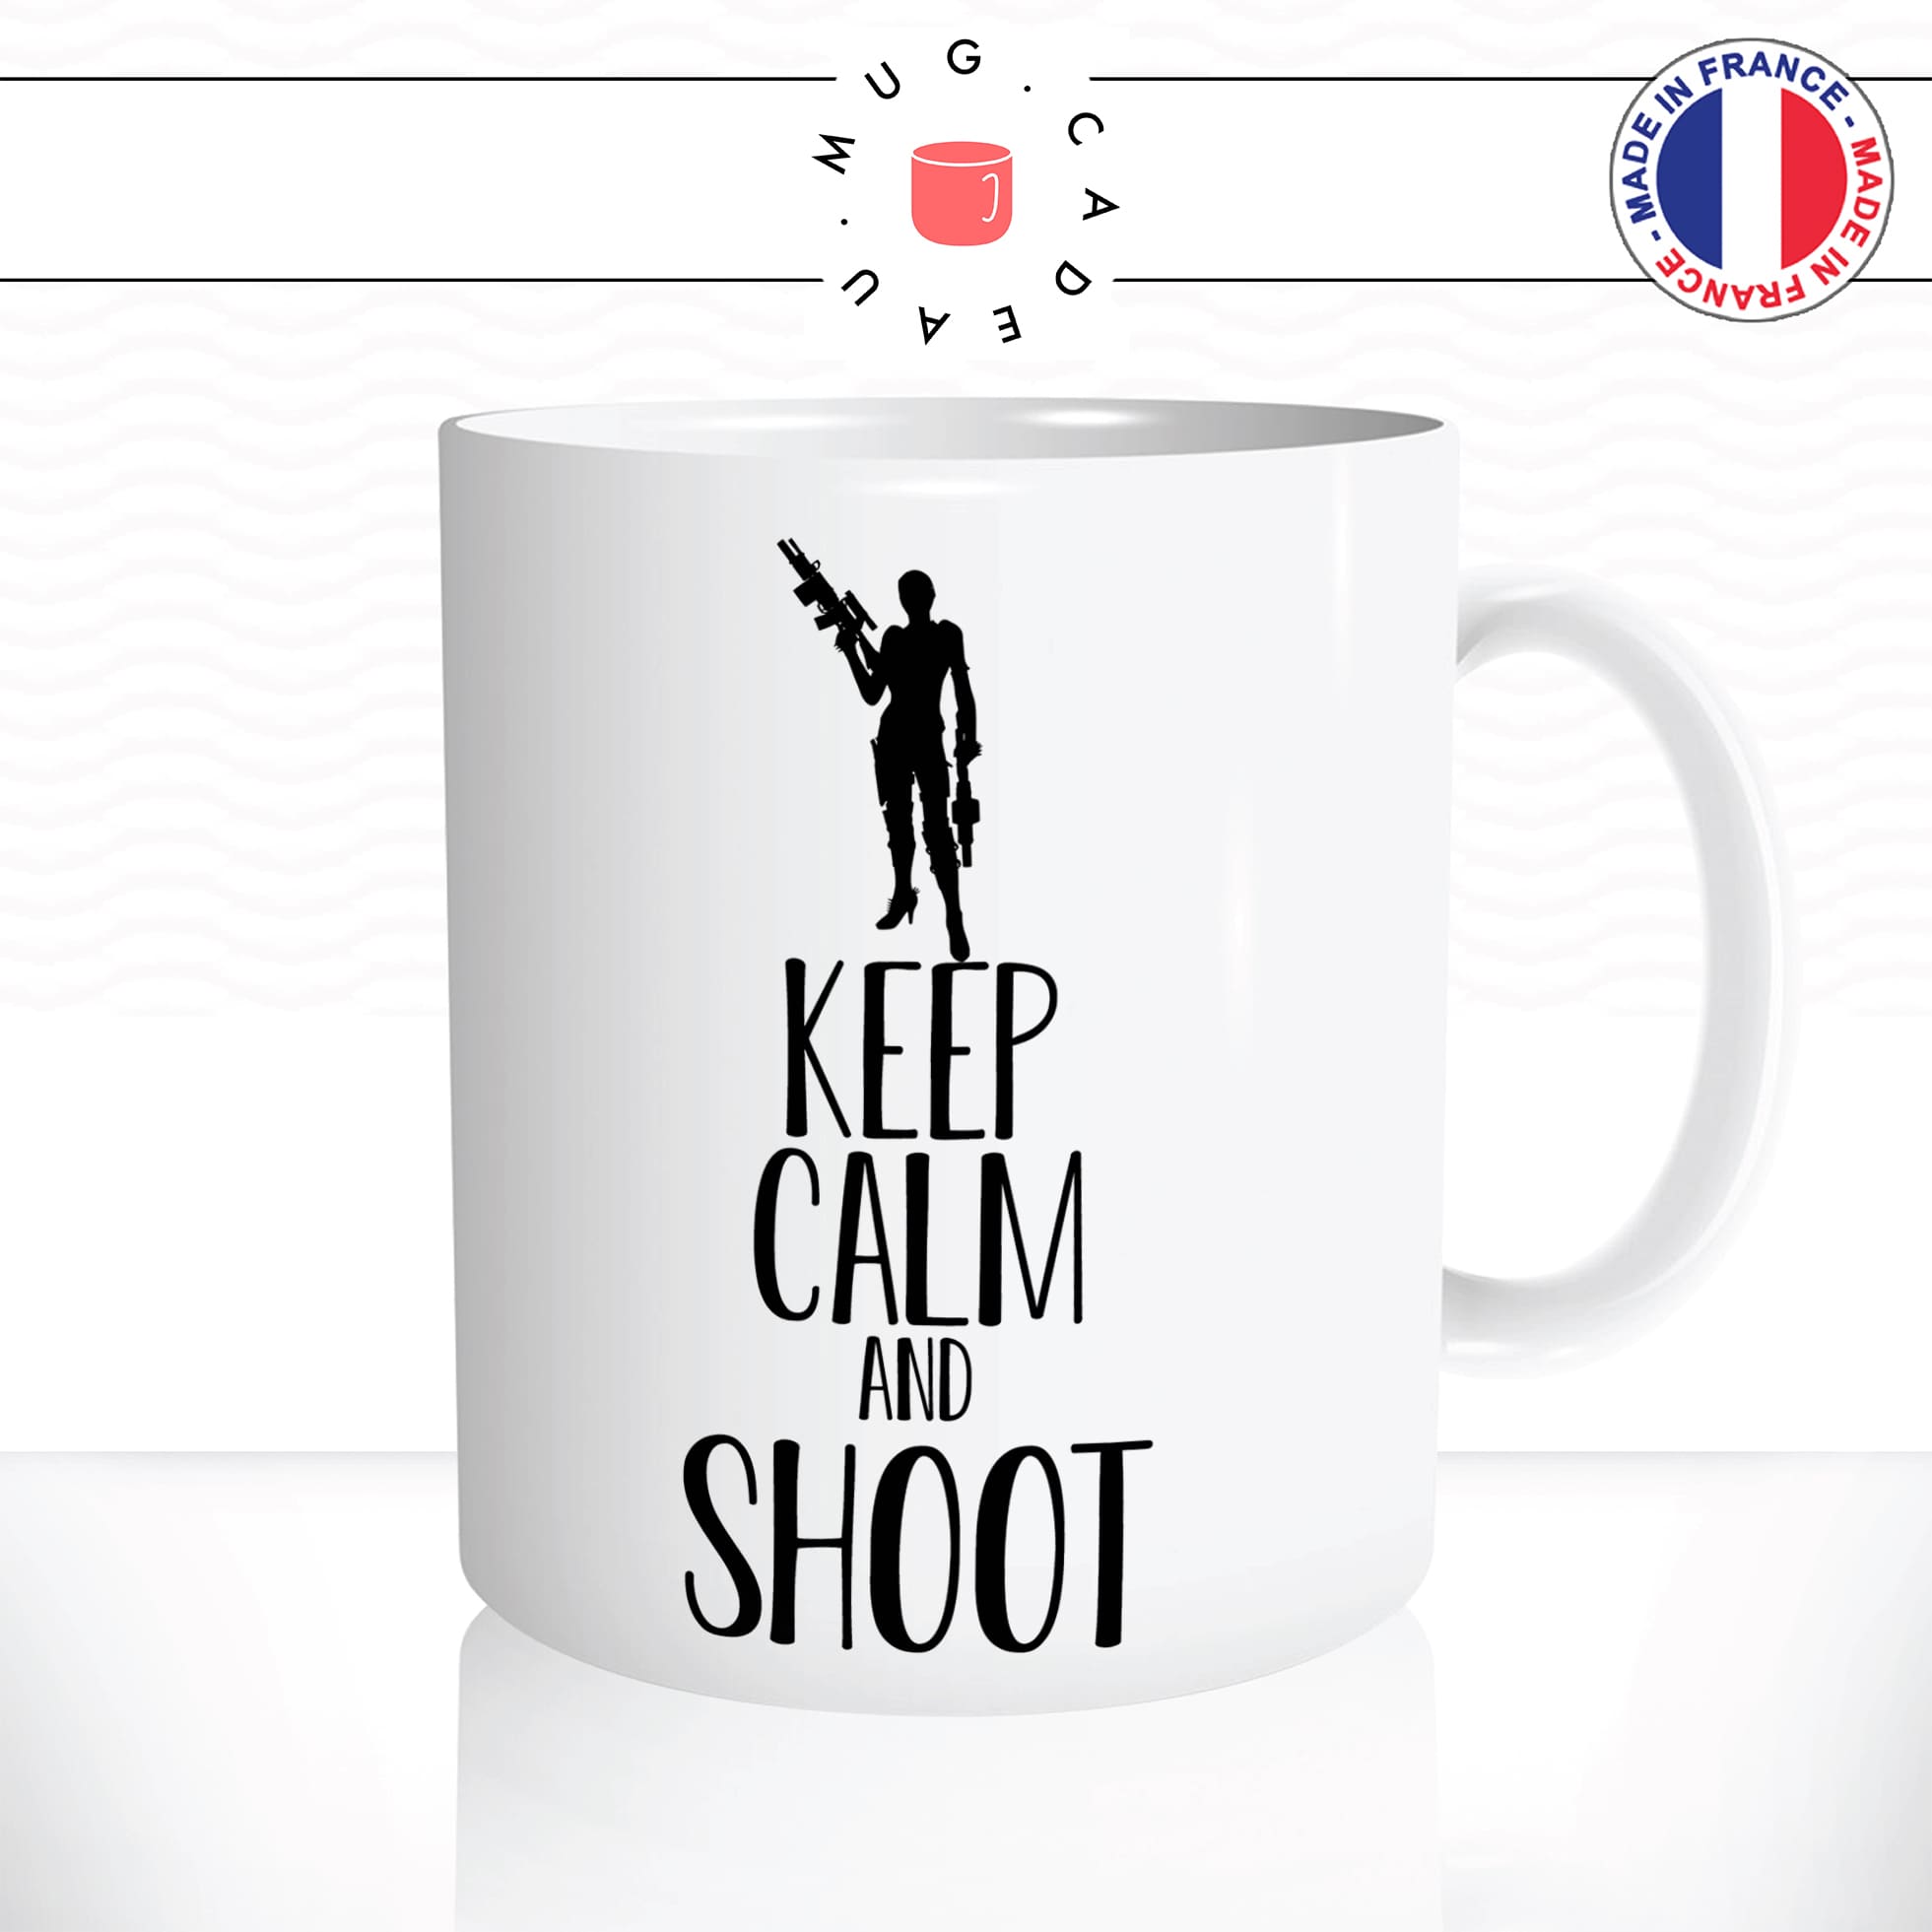 mug-tasse-keep-calm-and-shoot-femme-tire-fusil-arme-a-feu-sexy-fun-humour-original-mugs-tasses-café-thé-idée-cadeau-personnalisée2